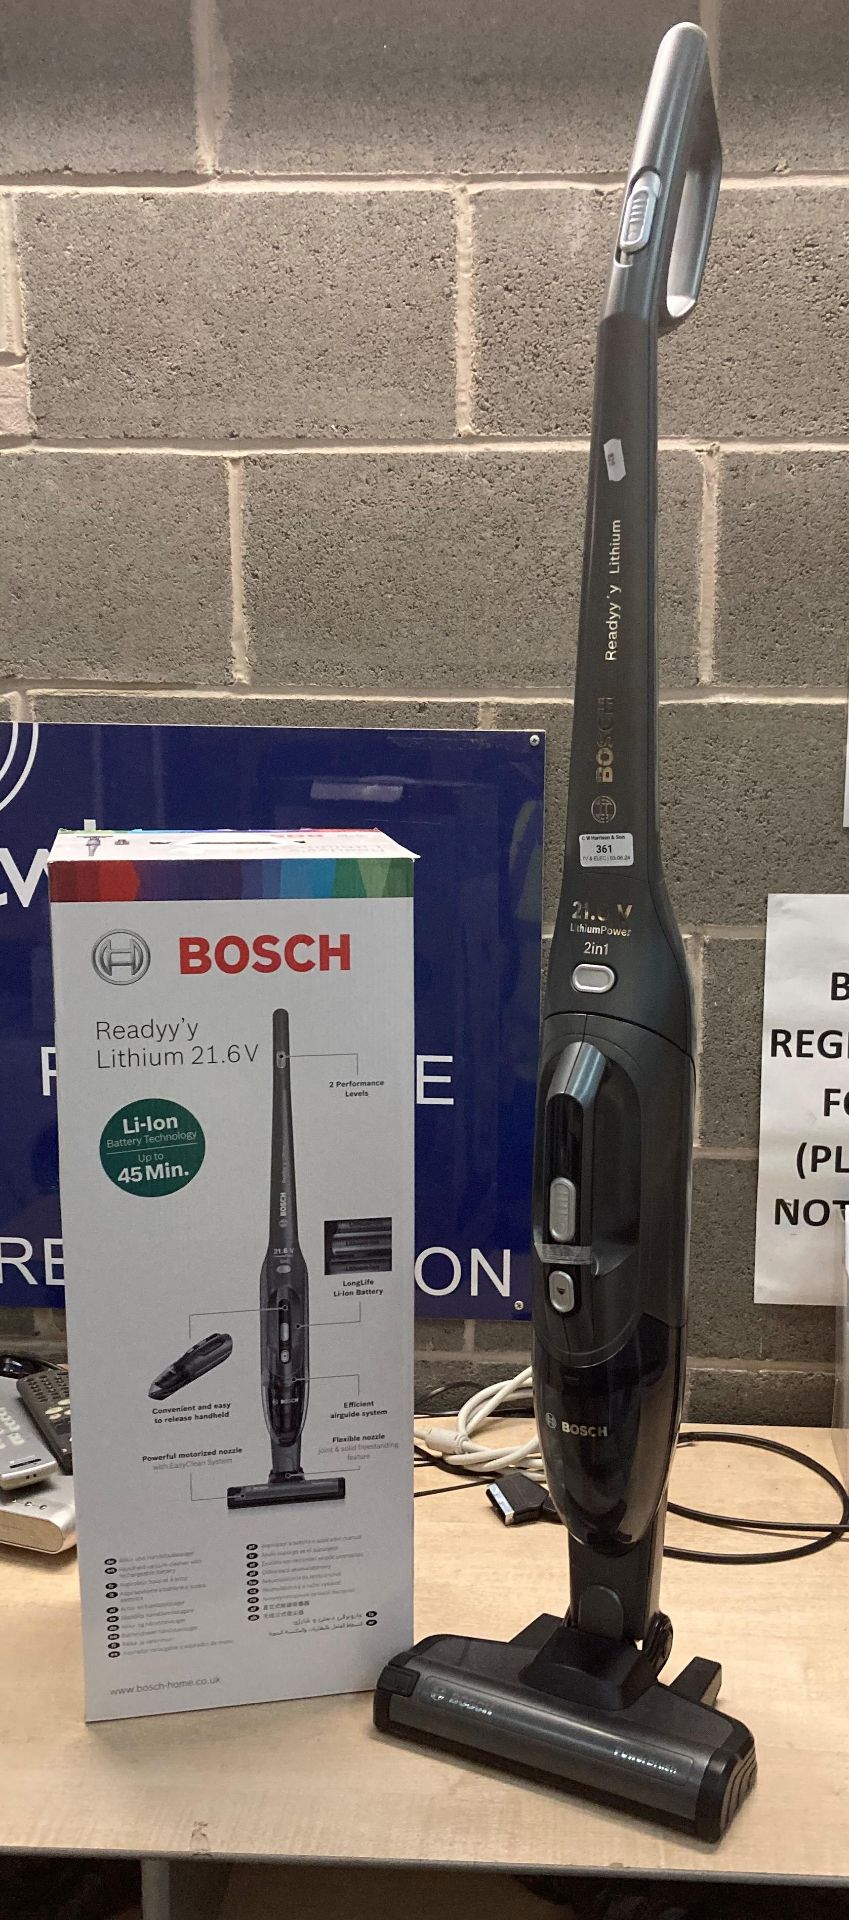 Bosch Readyy'y Lithium 21.